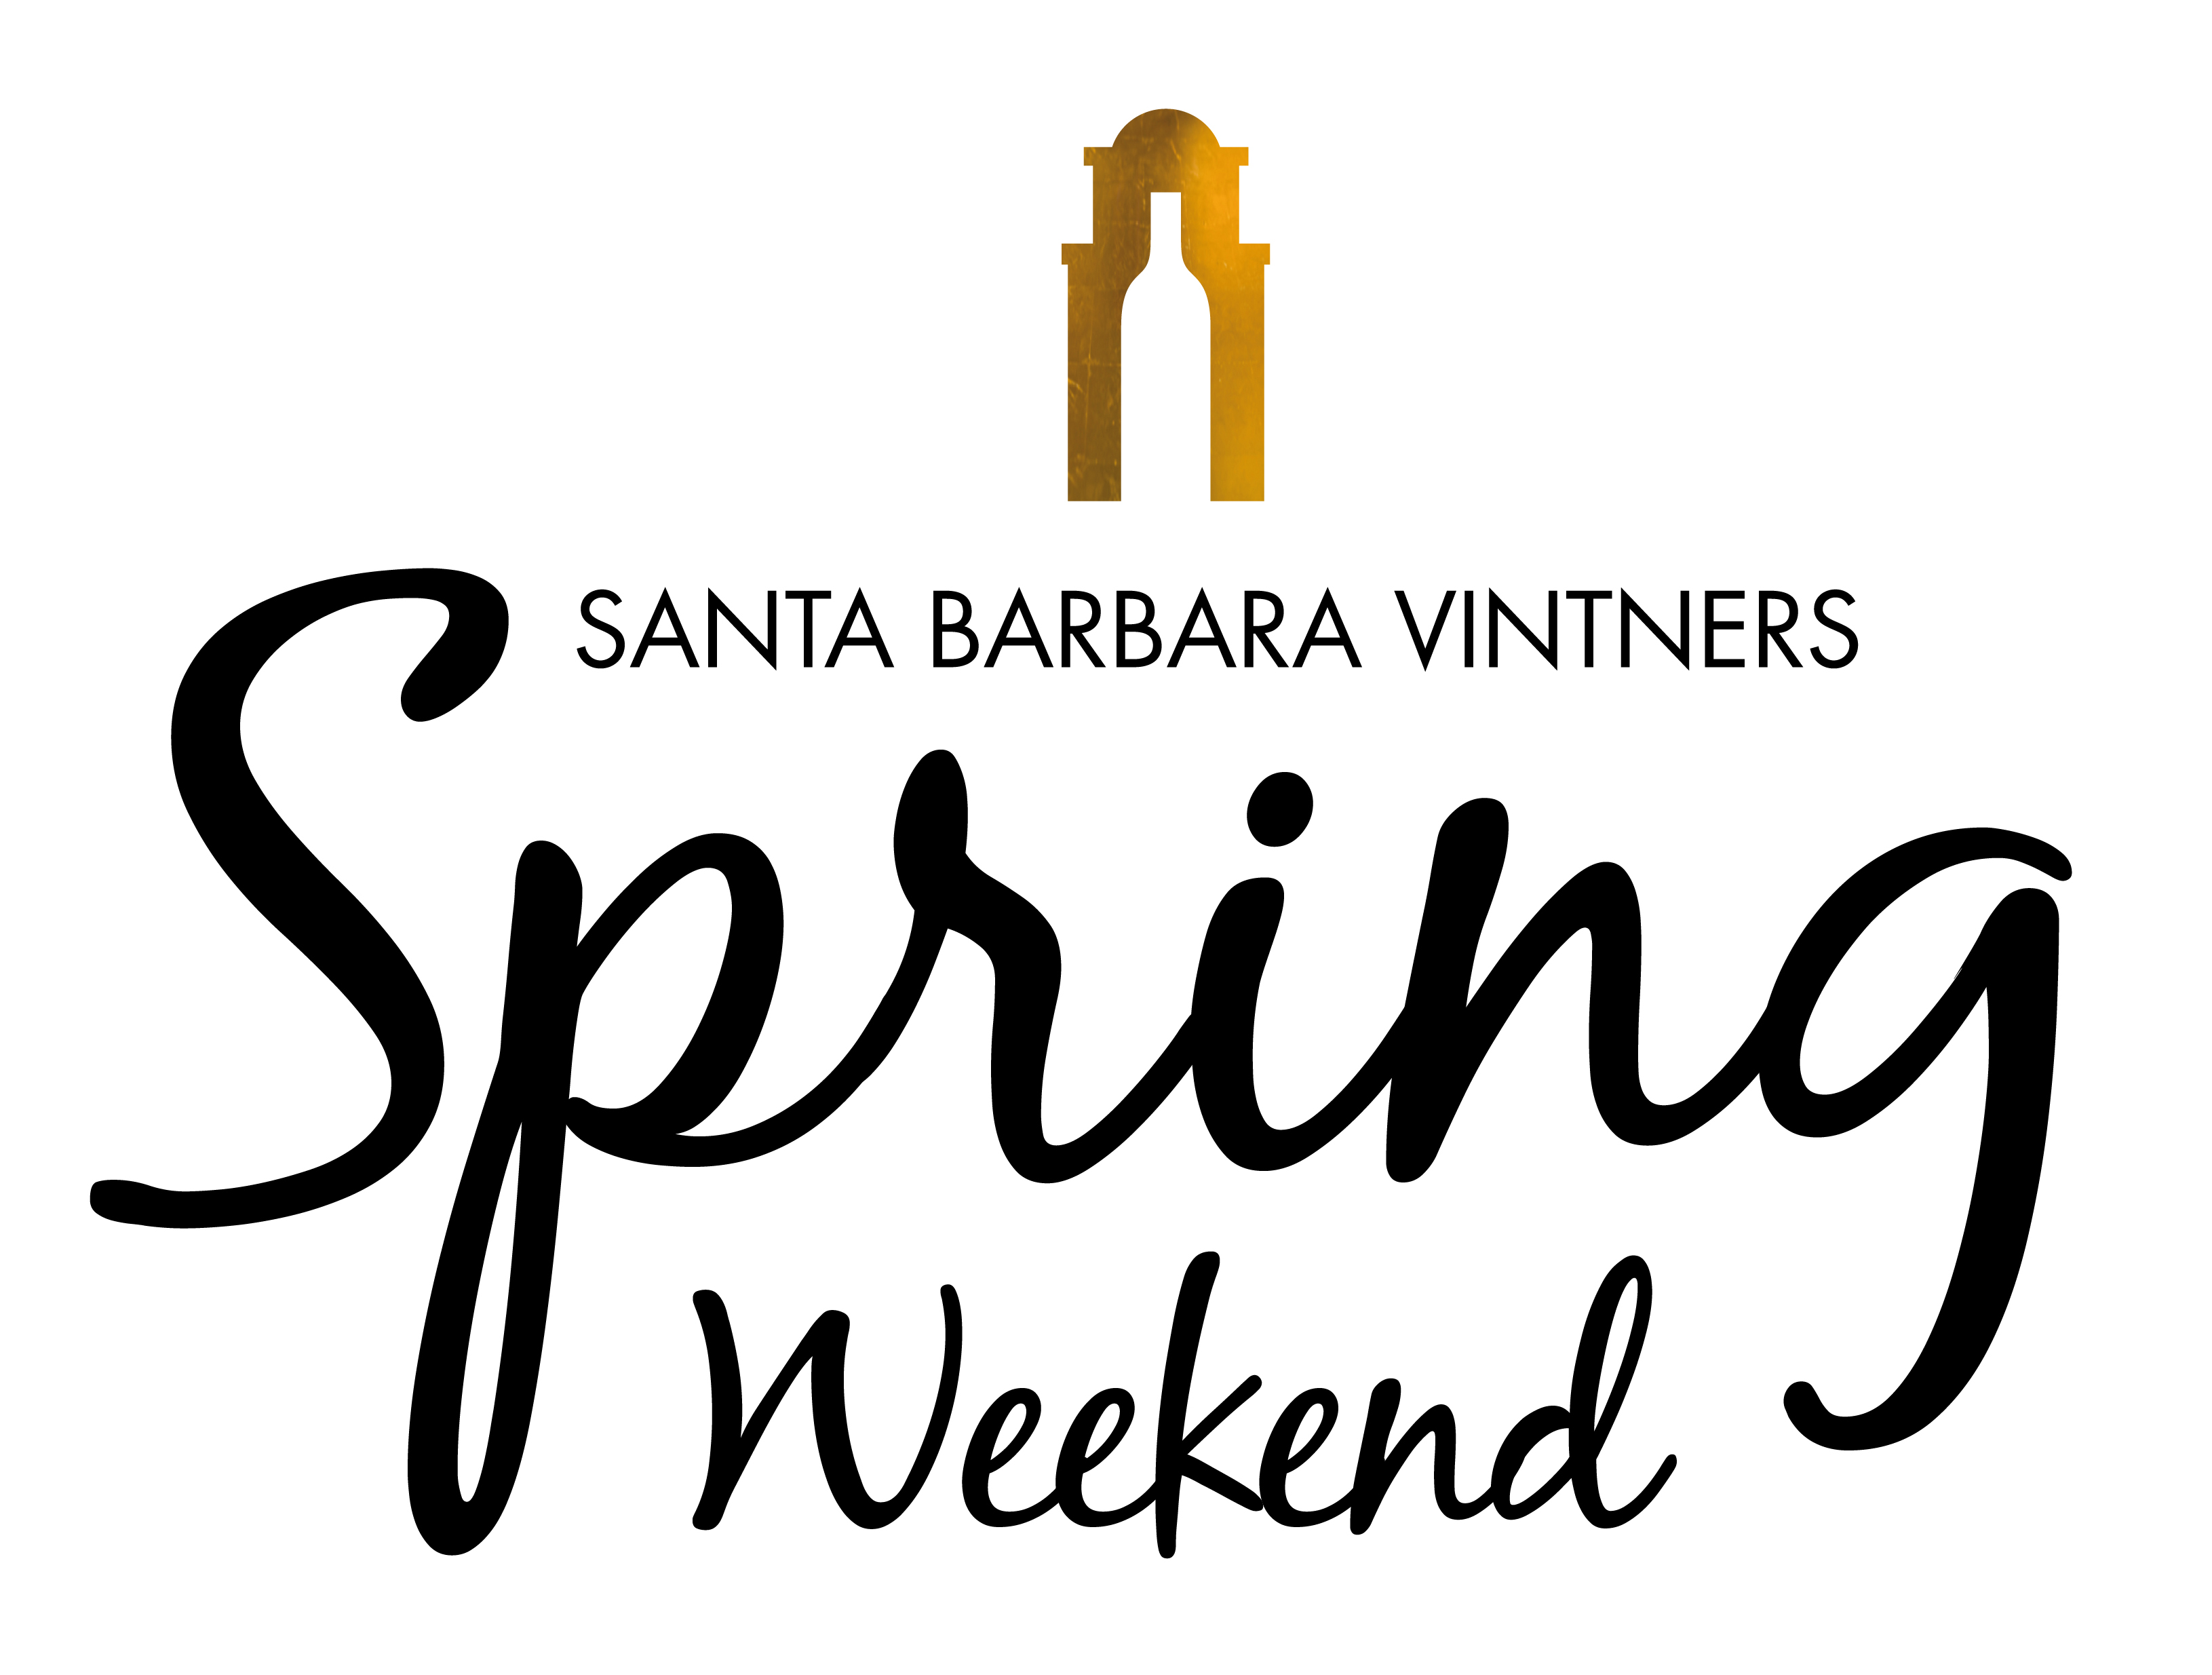 Wine Festival: Santa Barbara Vintners Spring Weekend, April 10-13, 2014